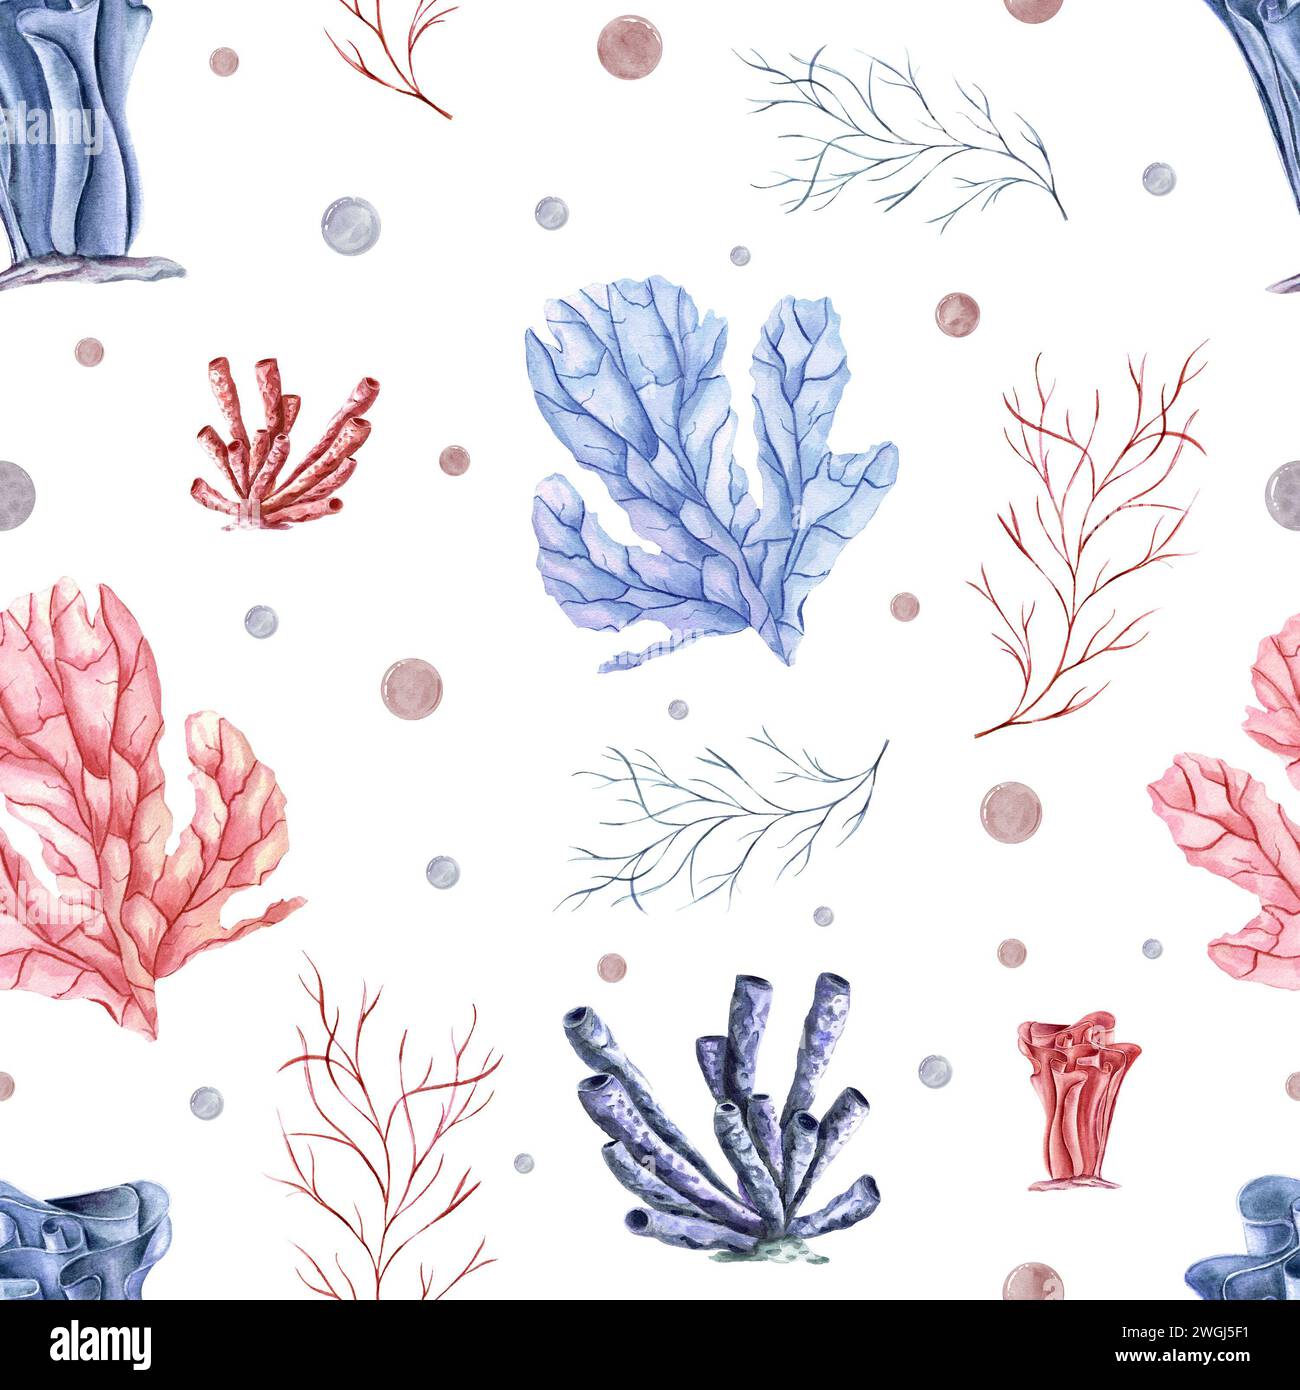 Modèle sans couture avec des polypes sous-marins, des plantes et des bulles d'eau. Coraux bleus, roses. Faune des récifs coralliens. Illustration aquarelle pour textile, tissu Banque D'Images